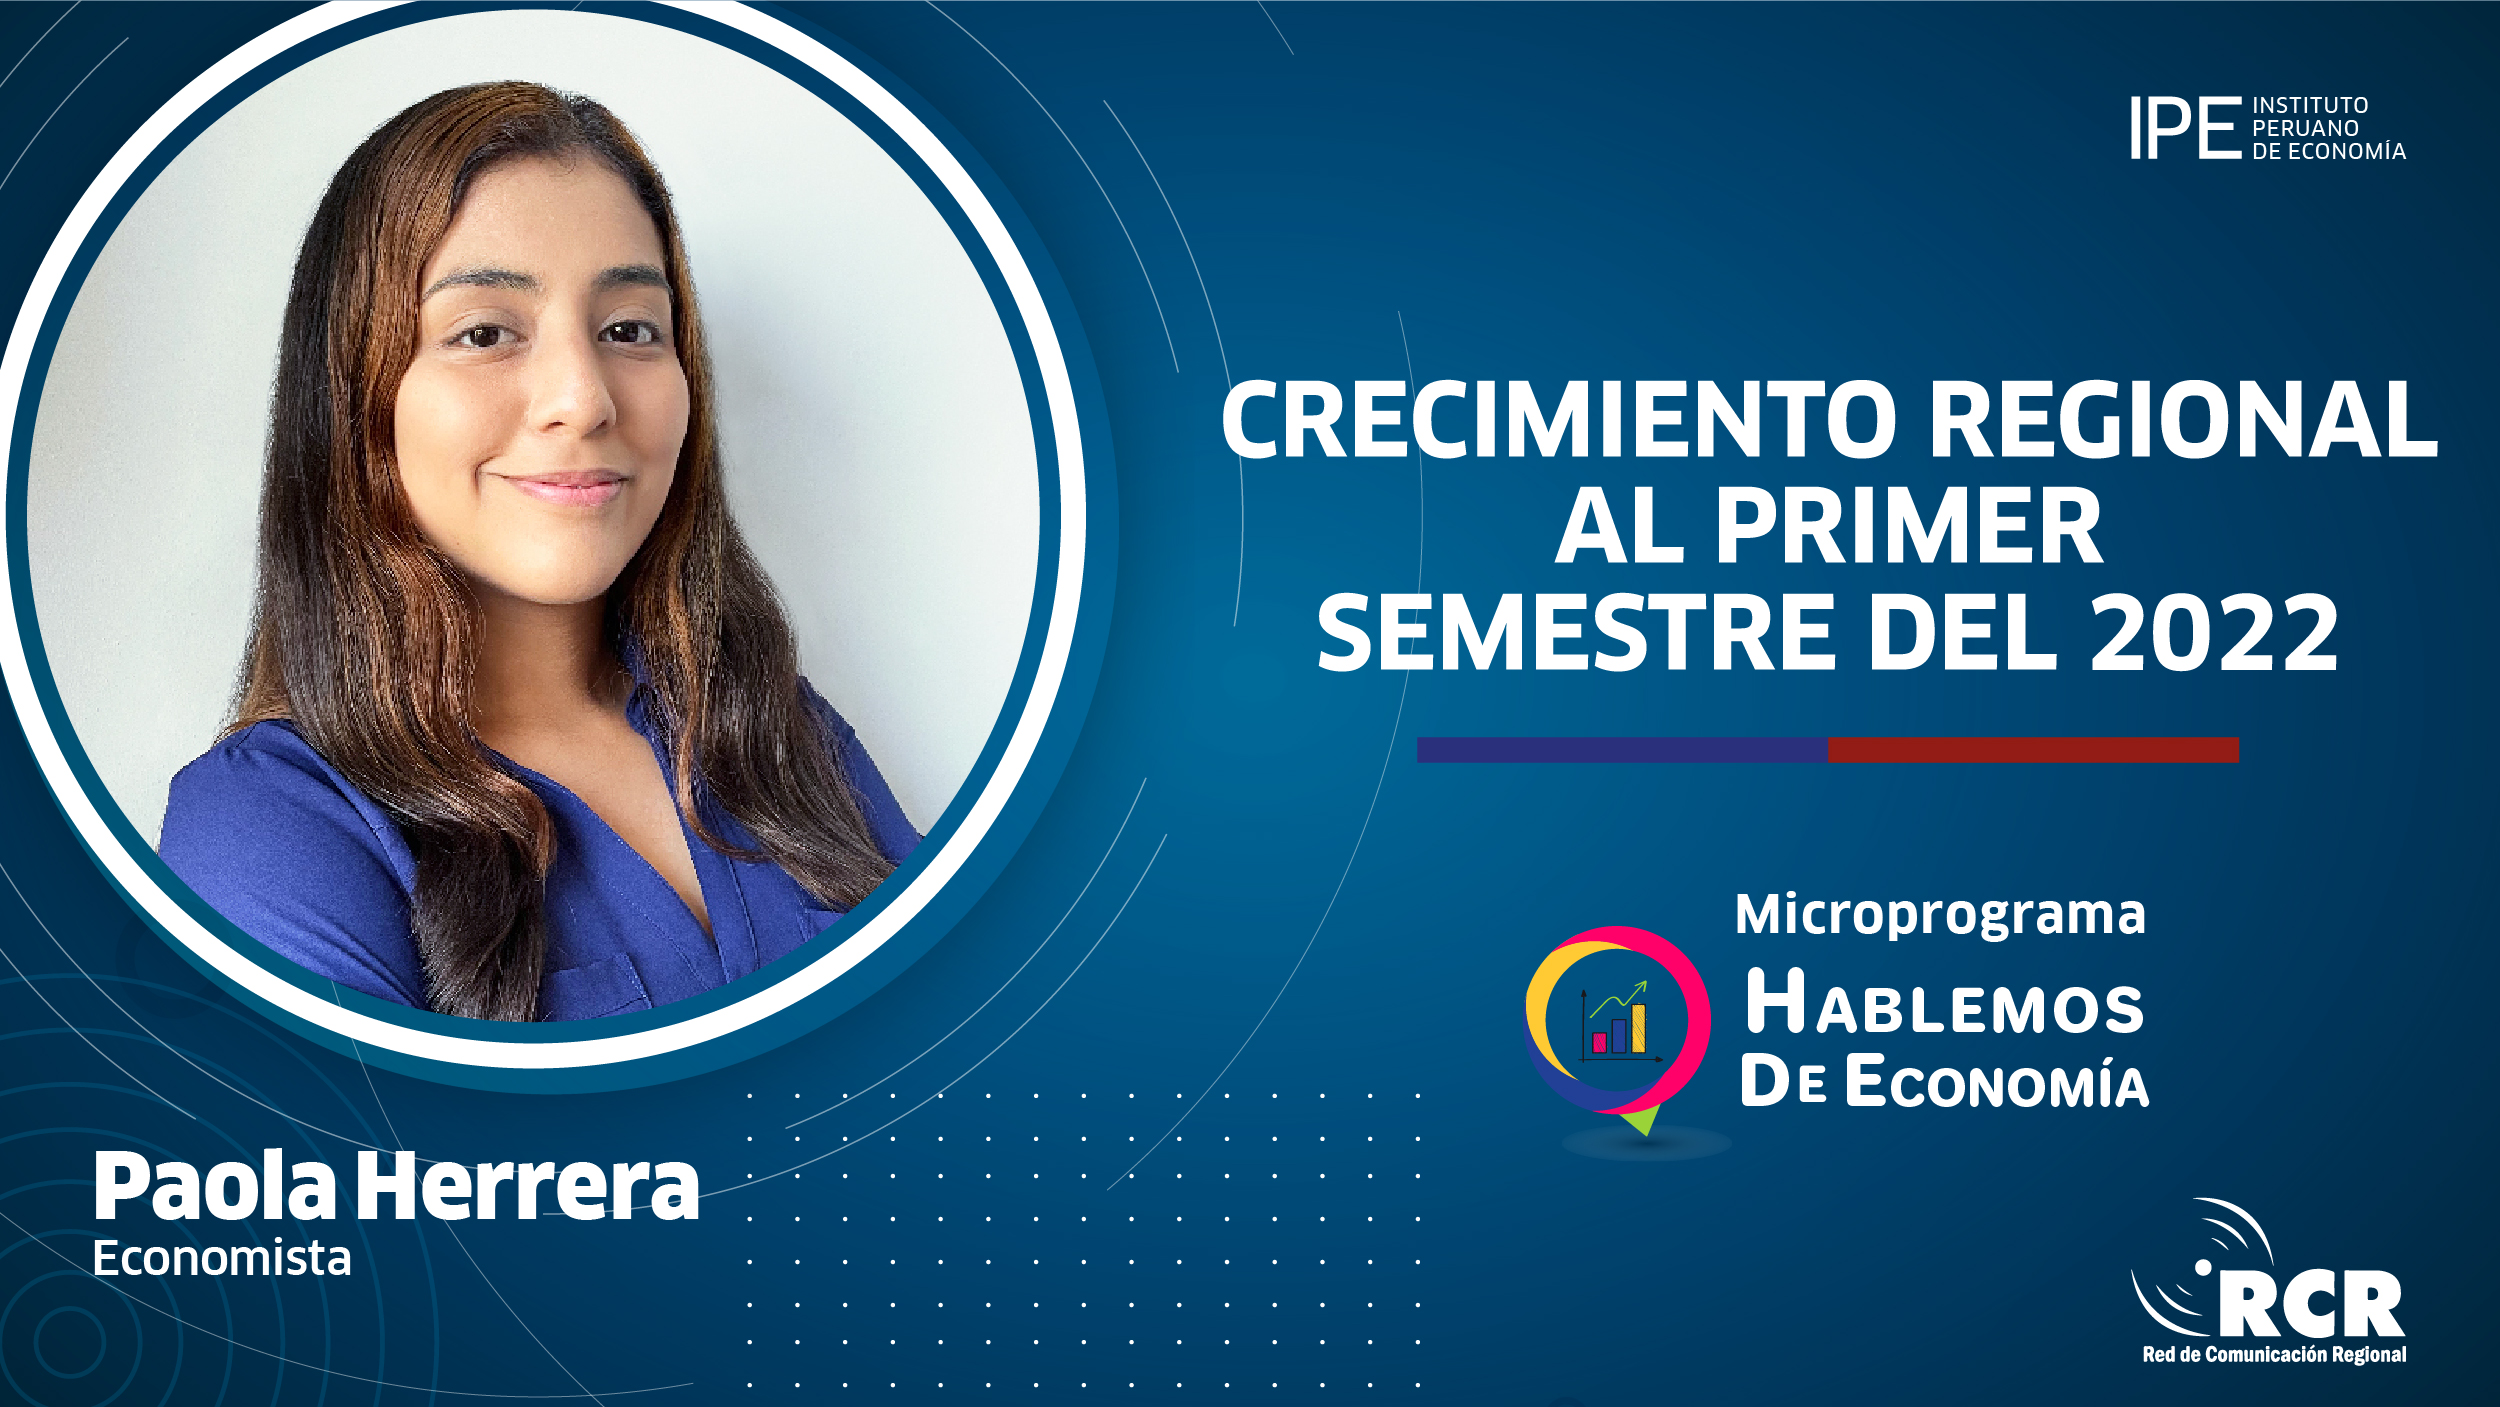 crecimiento regional, Paola Herrera, RCR, regiones, crecimiento económico